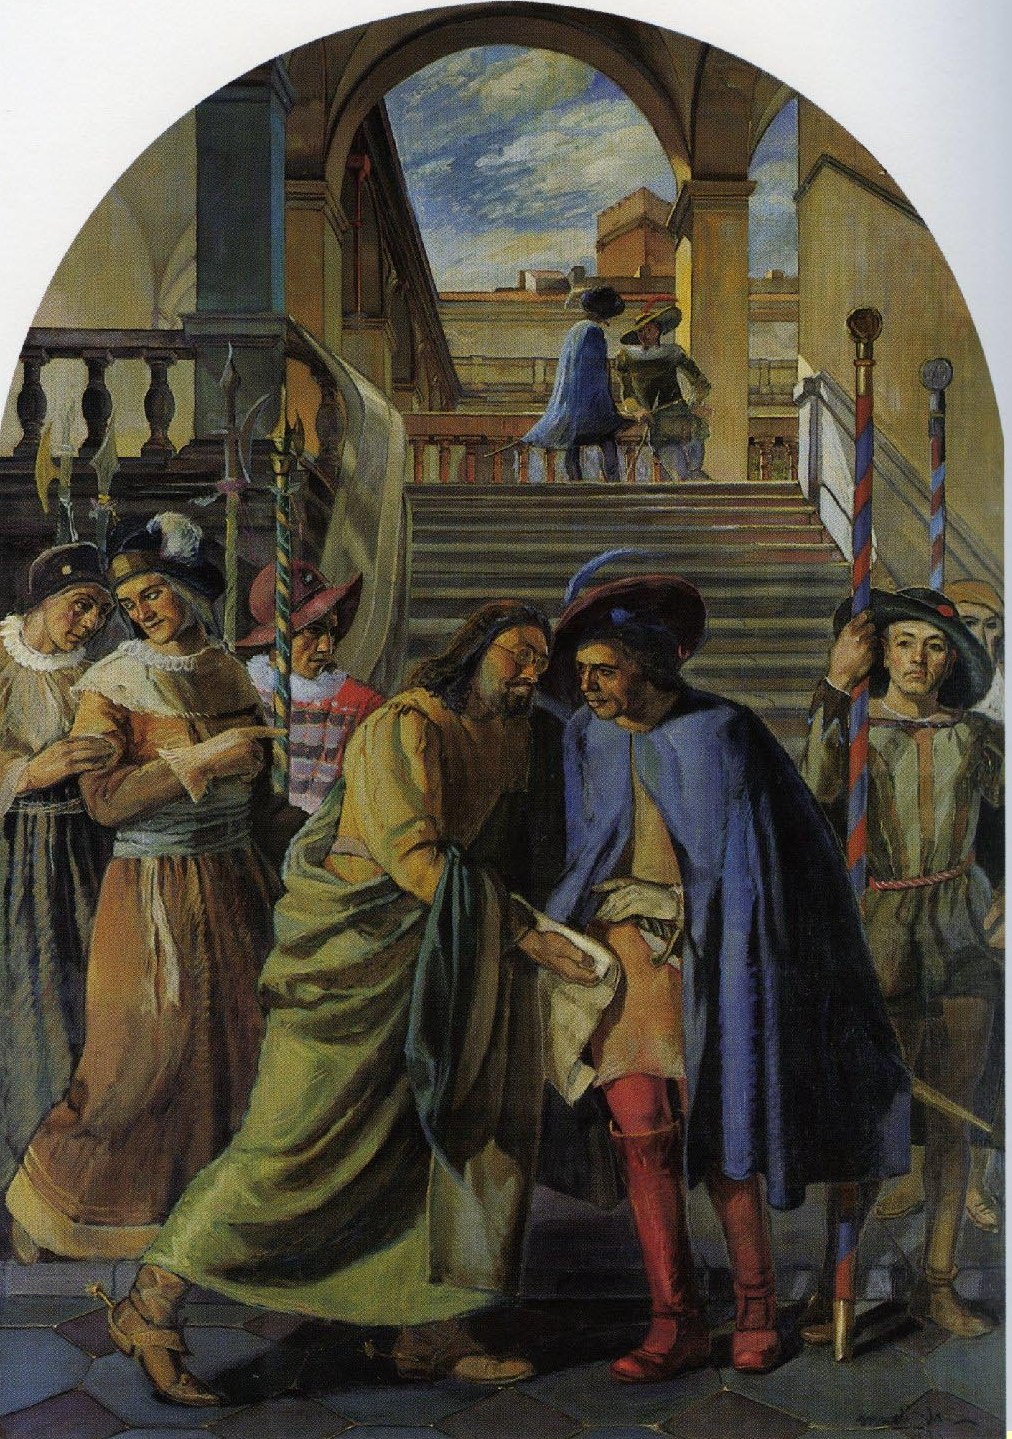 Il comune di sassari ottiene dalla cancelleria regia di madrid la "carta real" (1632. creazione dell'università) (dipinto)